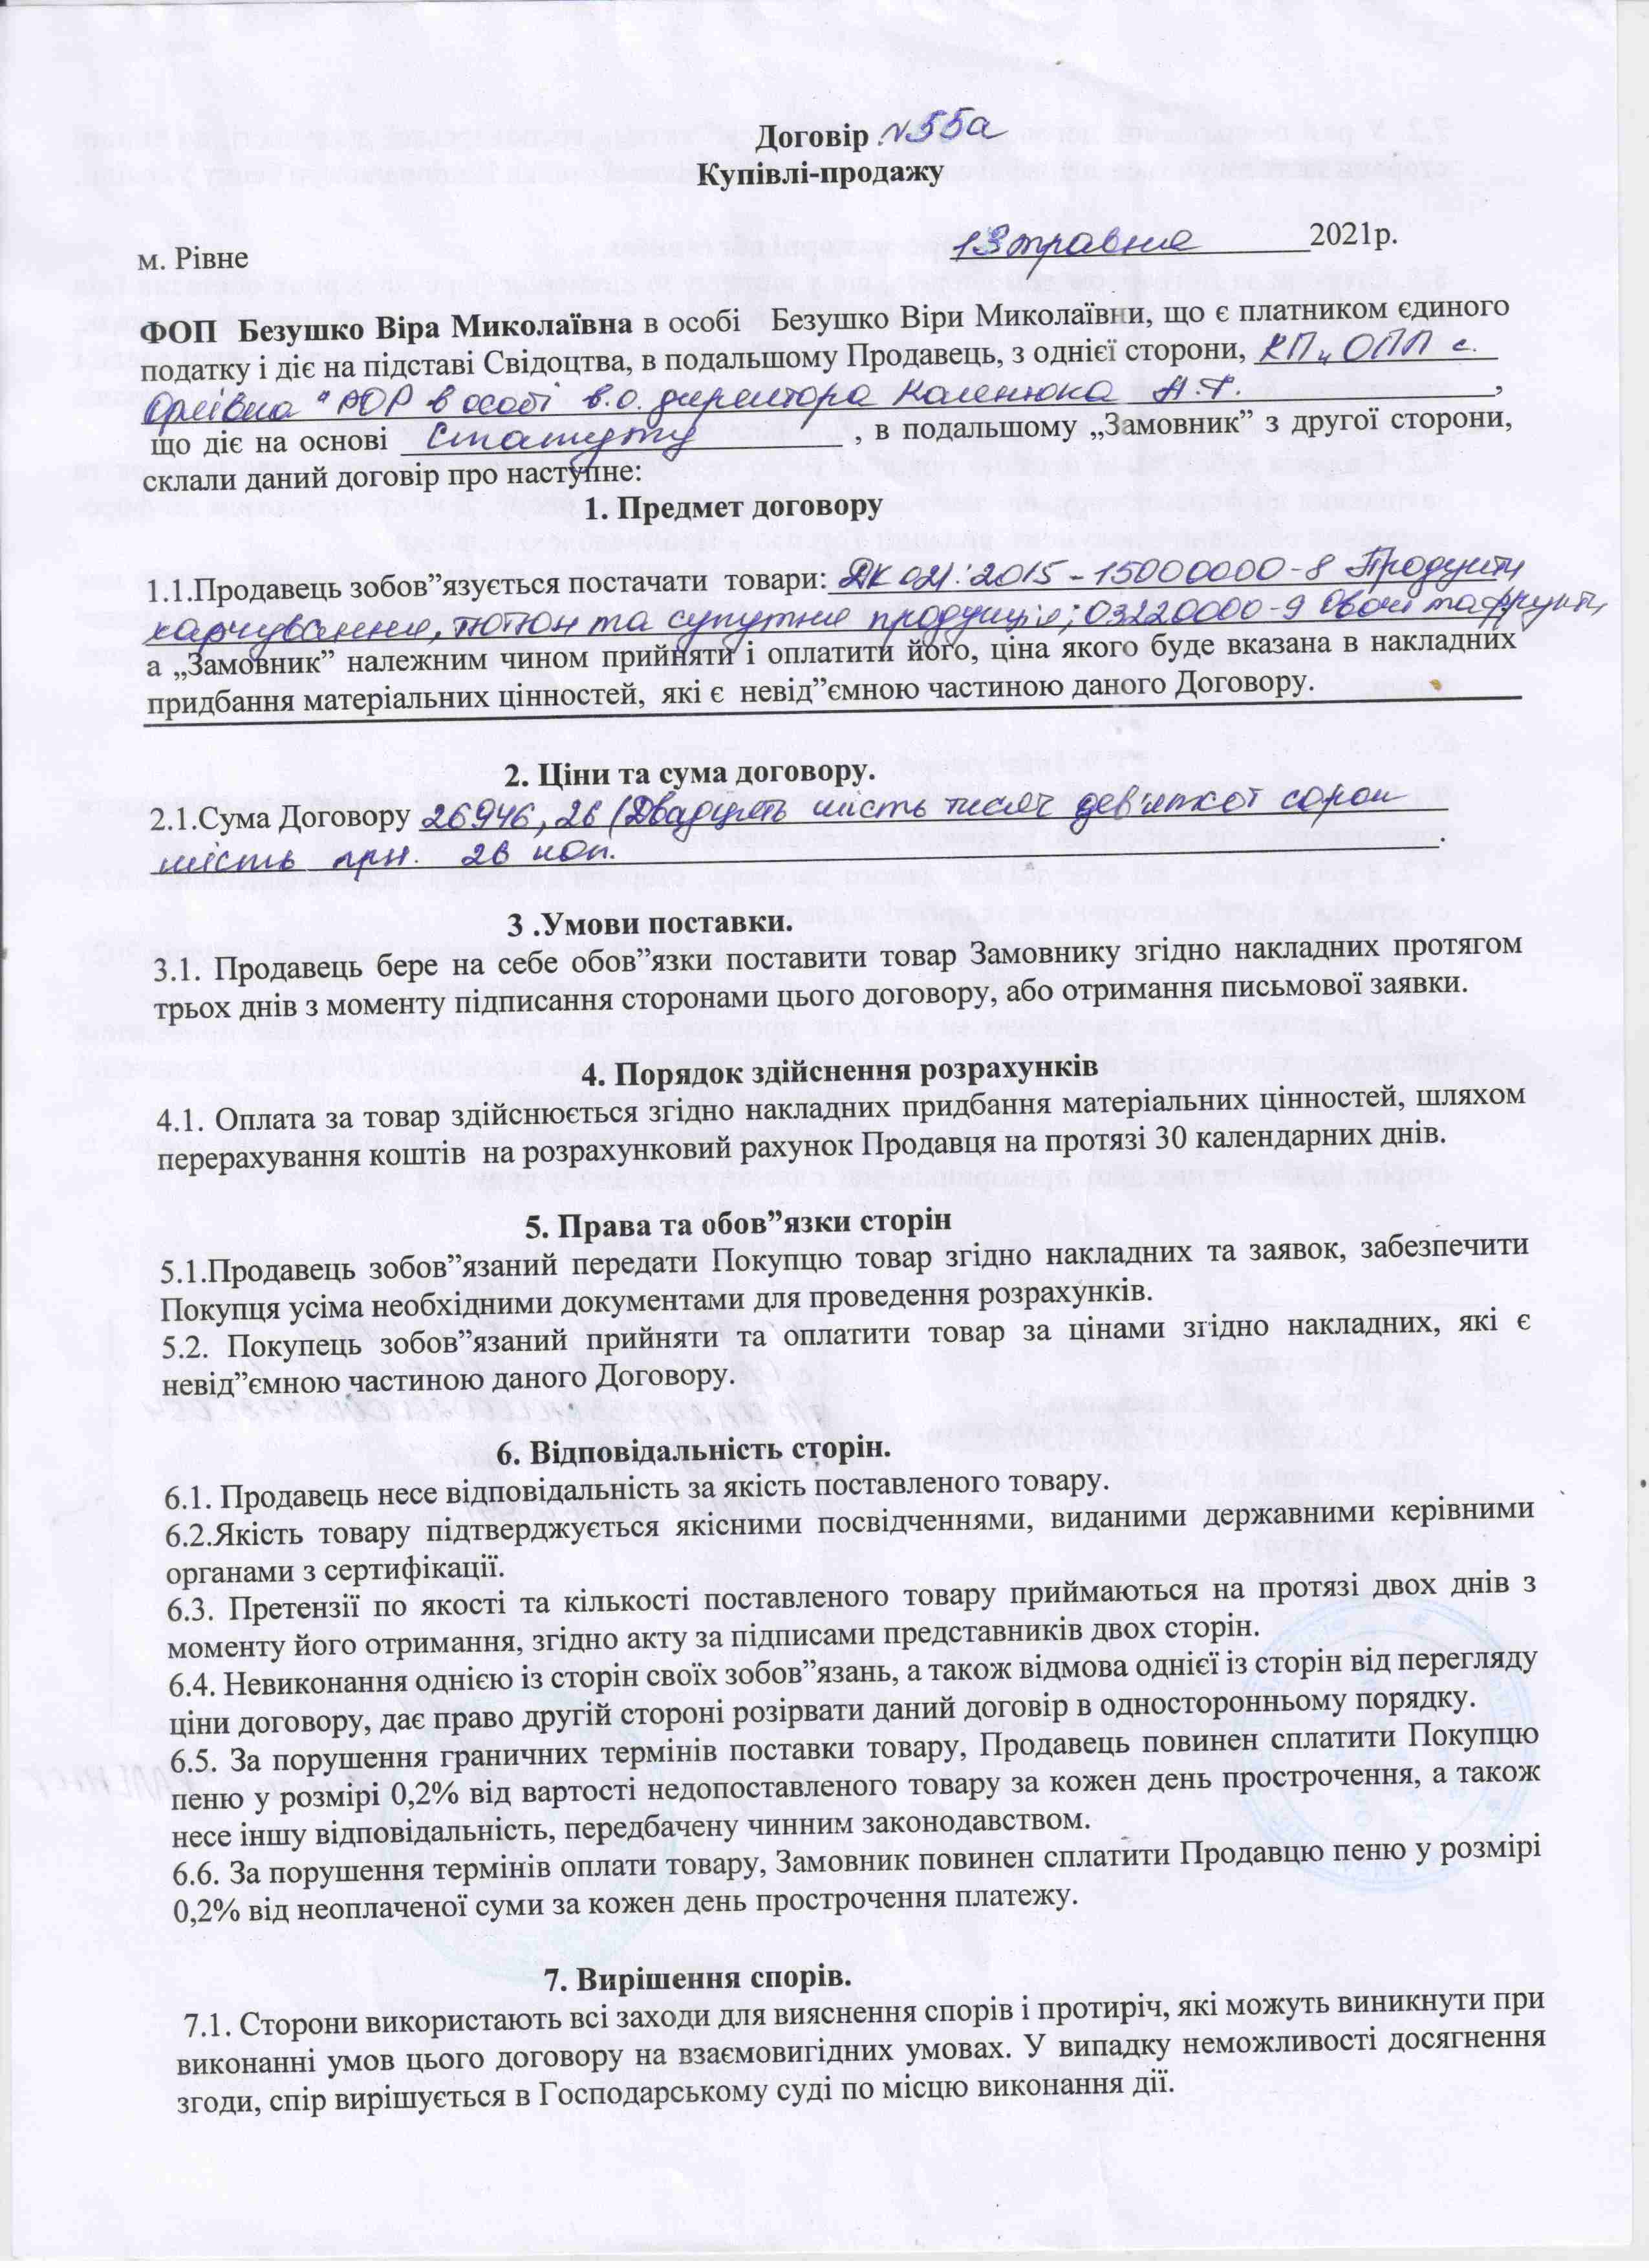 Договір №55а від 13.05.2021 р.